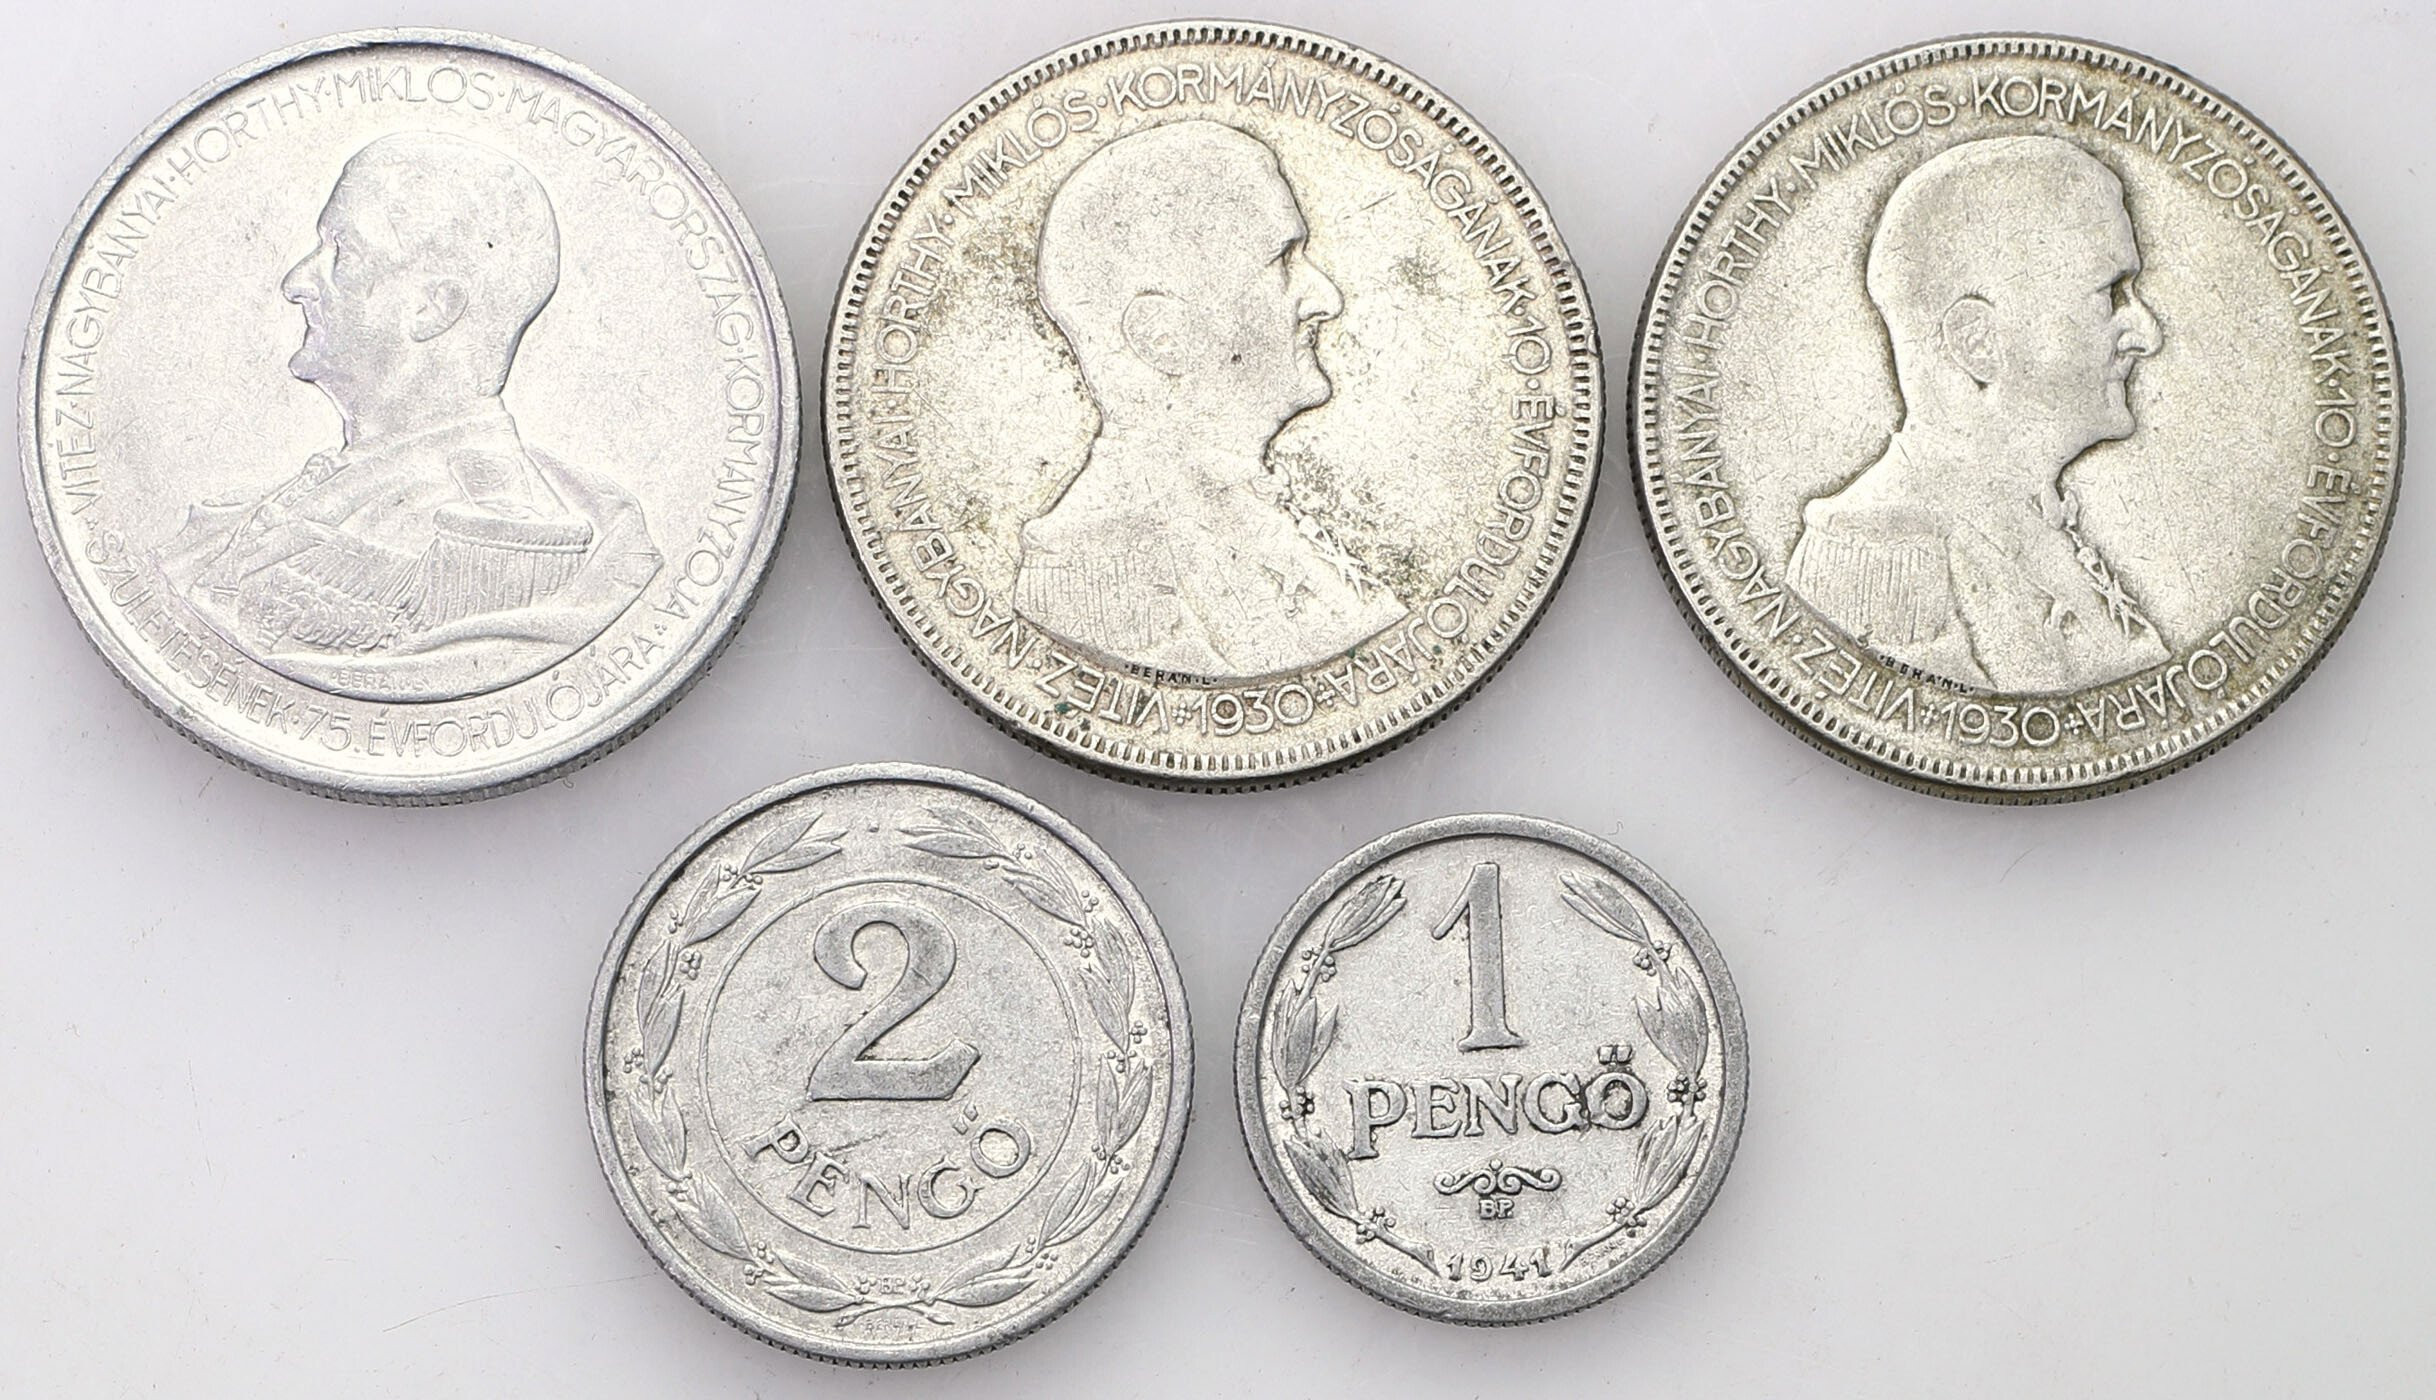 Węgry, MiklosHorthy2 x 5 pengö 1930, 5 pengo 1943, 2 pengo 1942, 1 pengo 1941